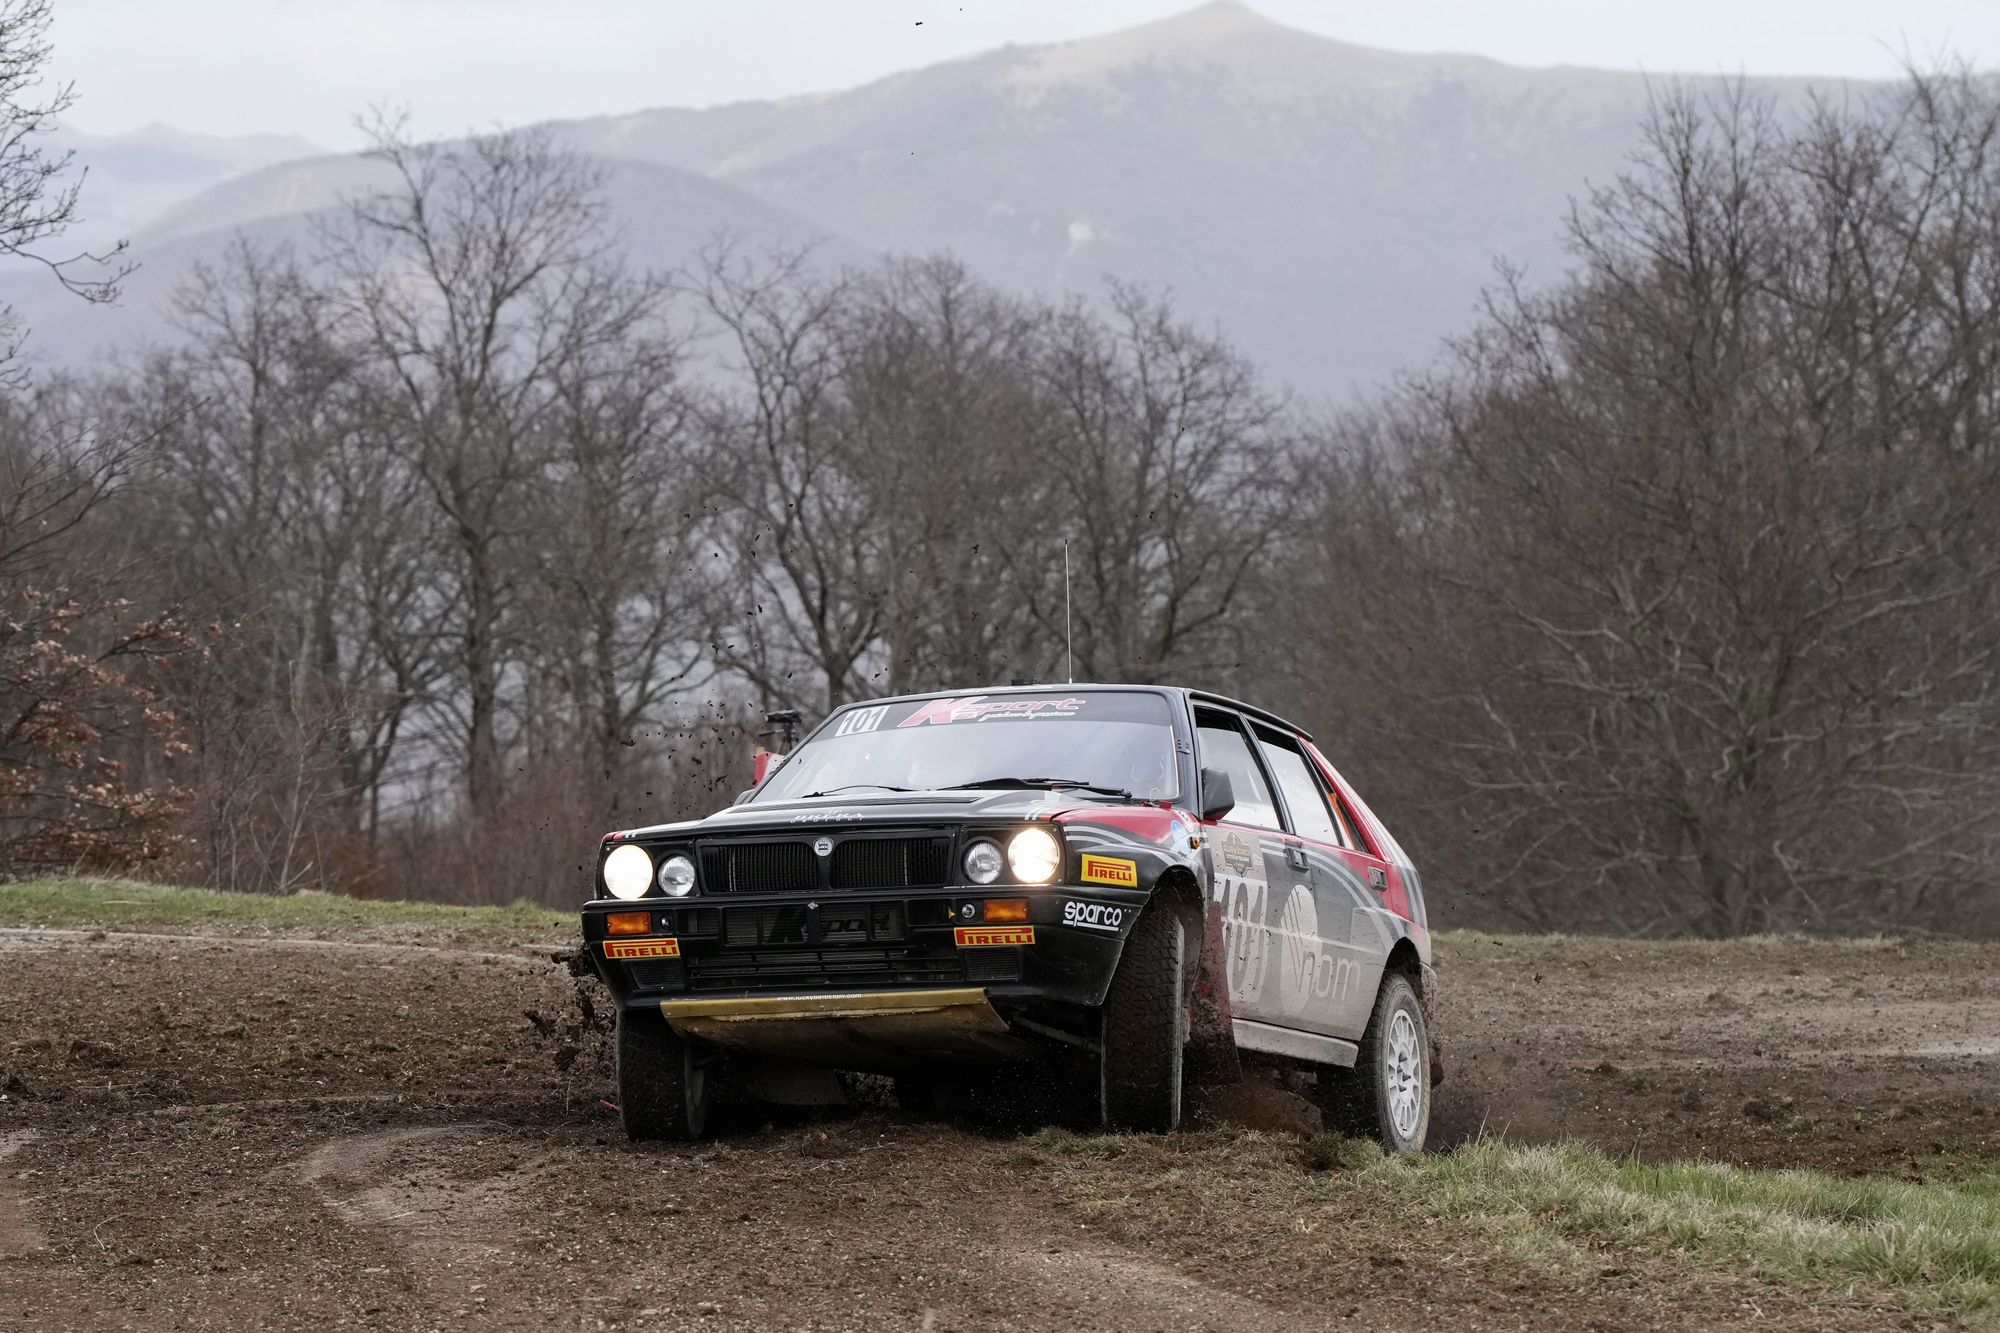 A “Lucky” - Pons la prima del  Campionato Italiano Rally Terra Storico